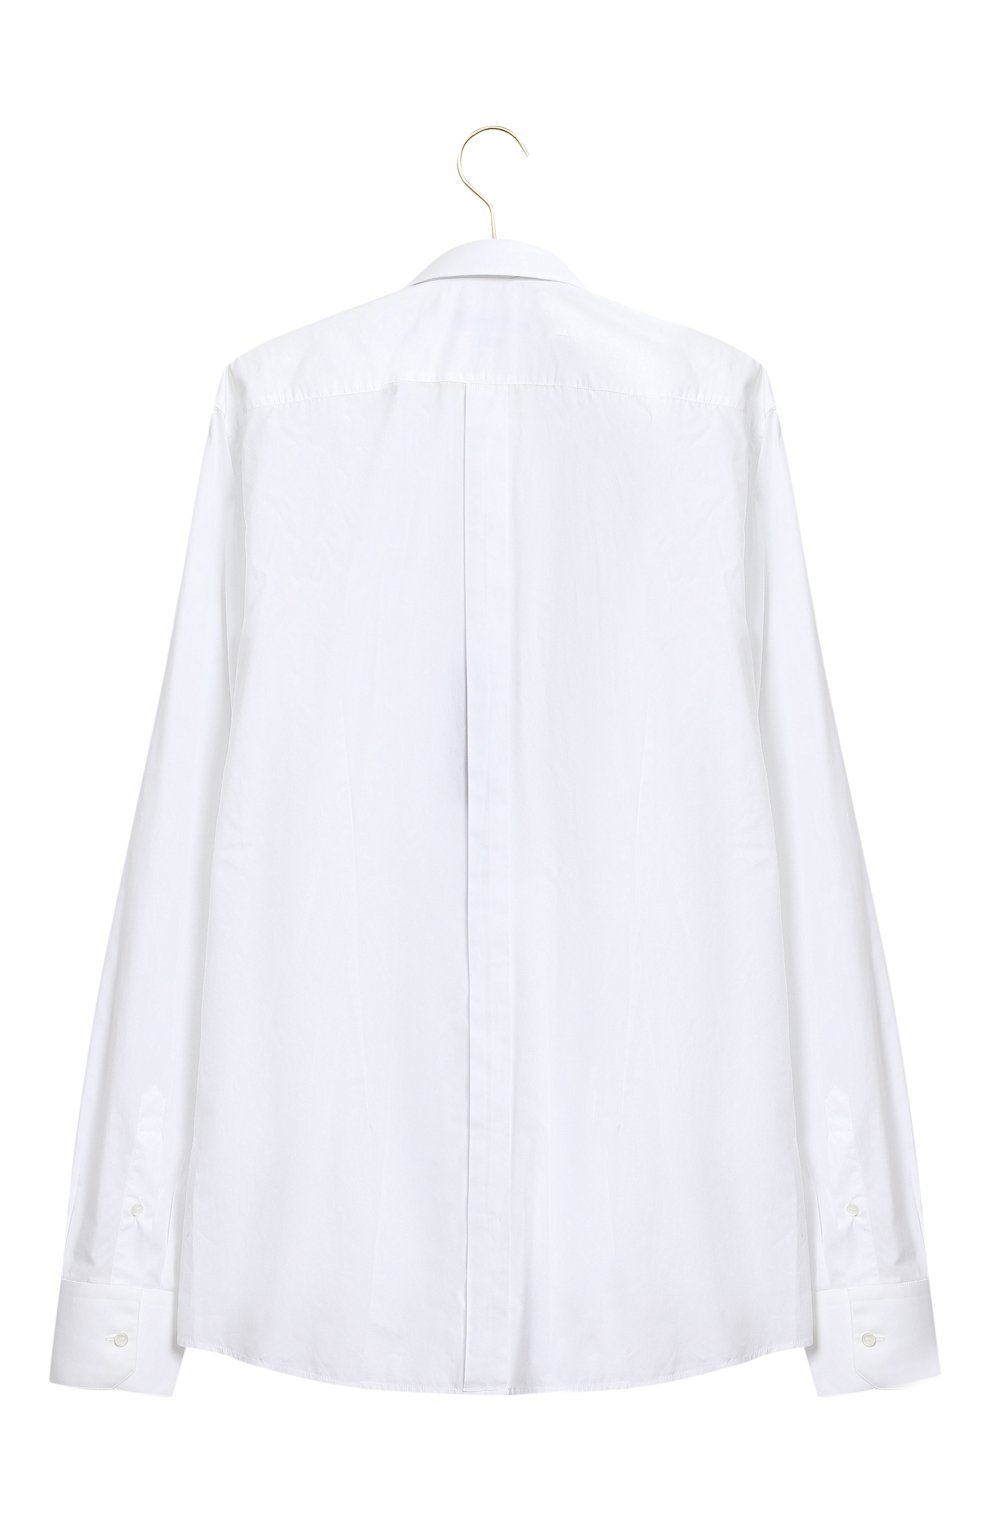 Хлопковая сорочка | Dolce & Gabbana | Белый - 2